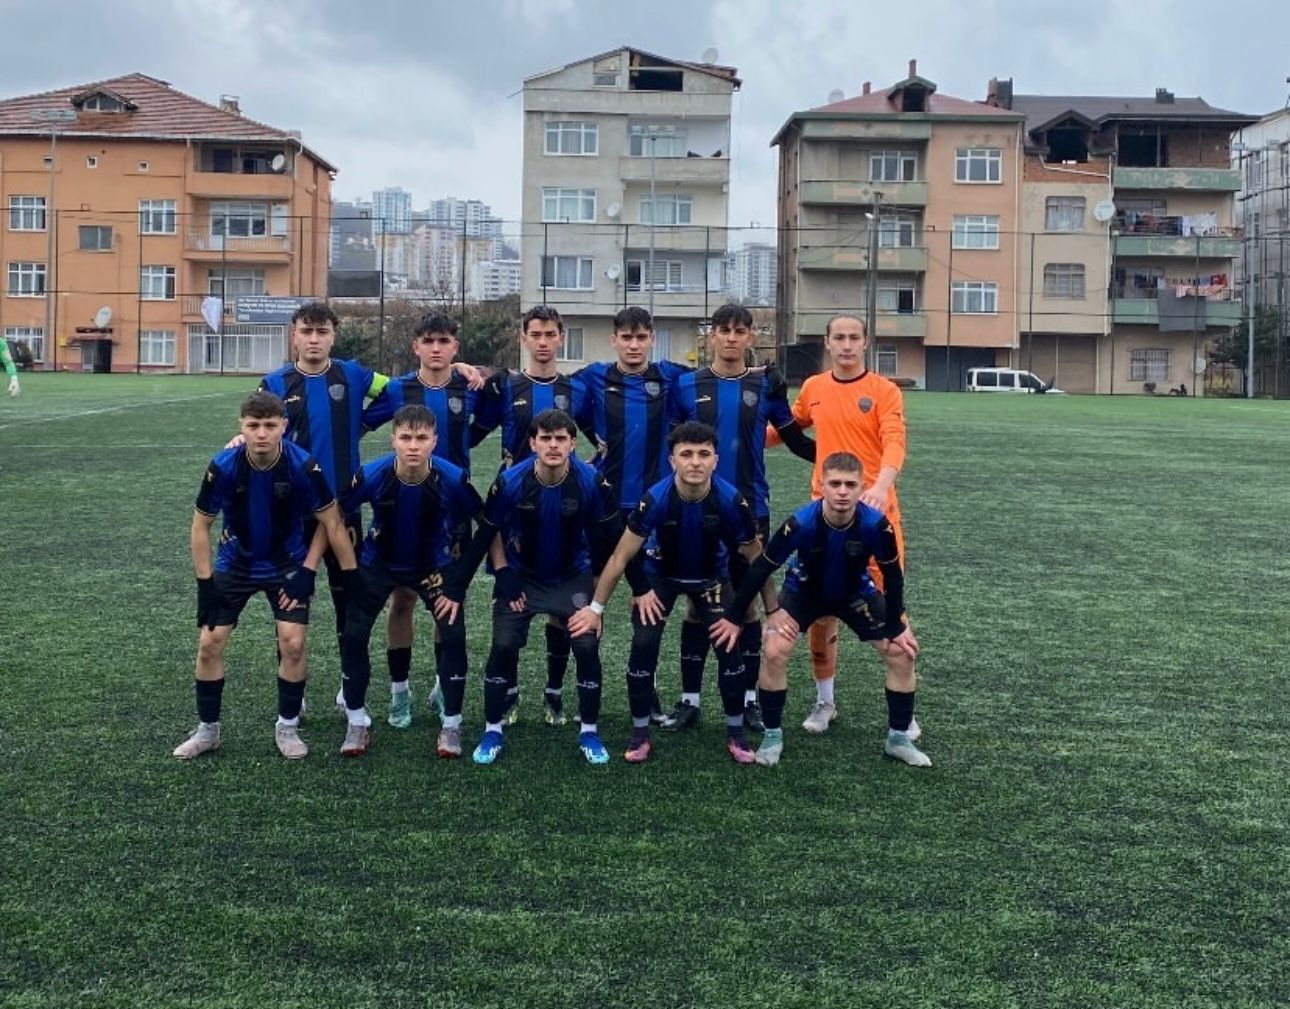  Fatsa Belediyespor U19 Son İç Saha Maçında Dört Golle Kazandı 4-0